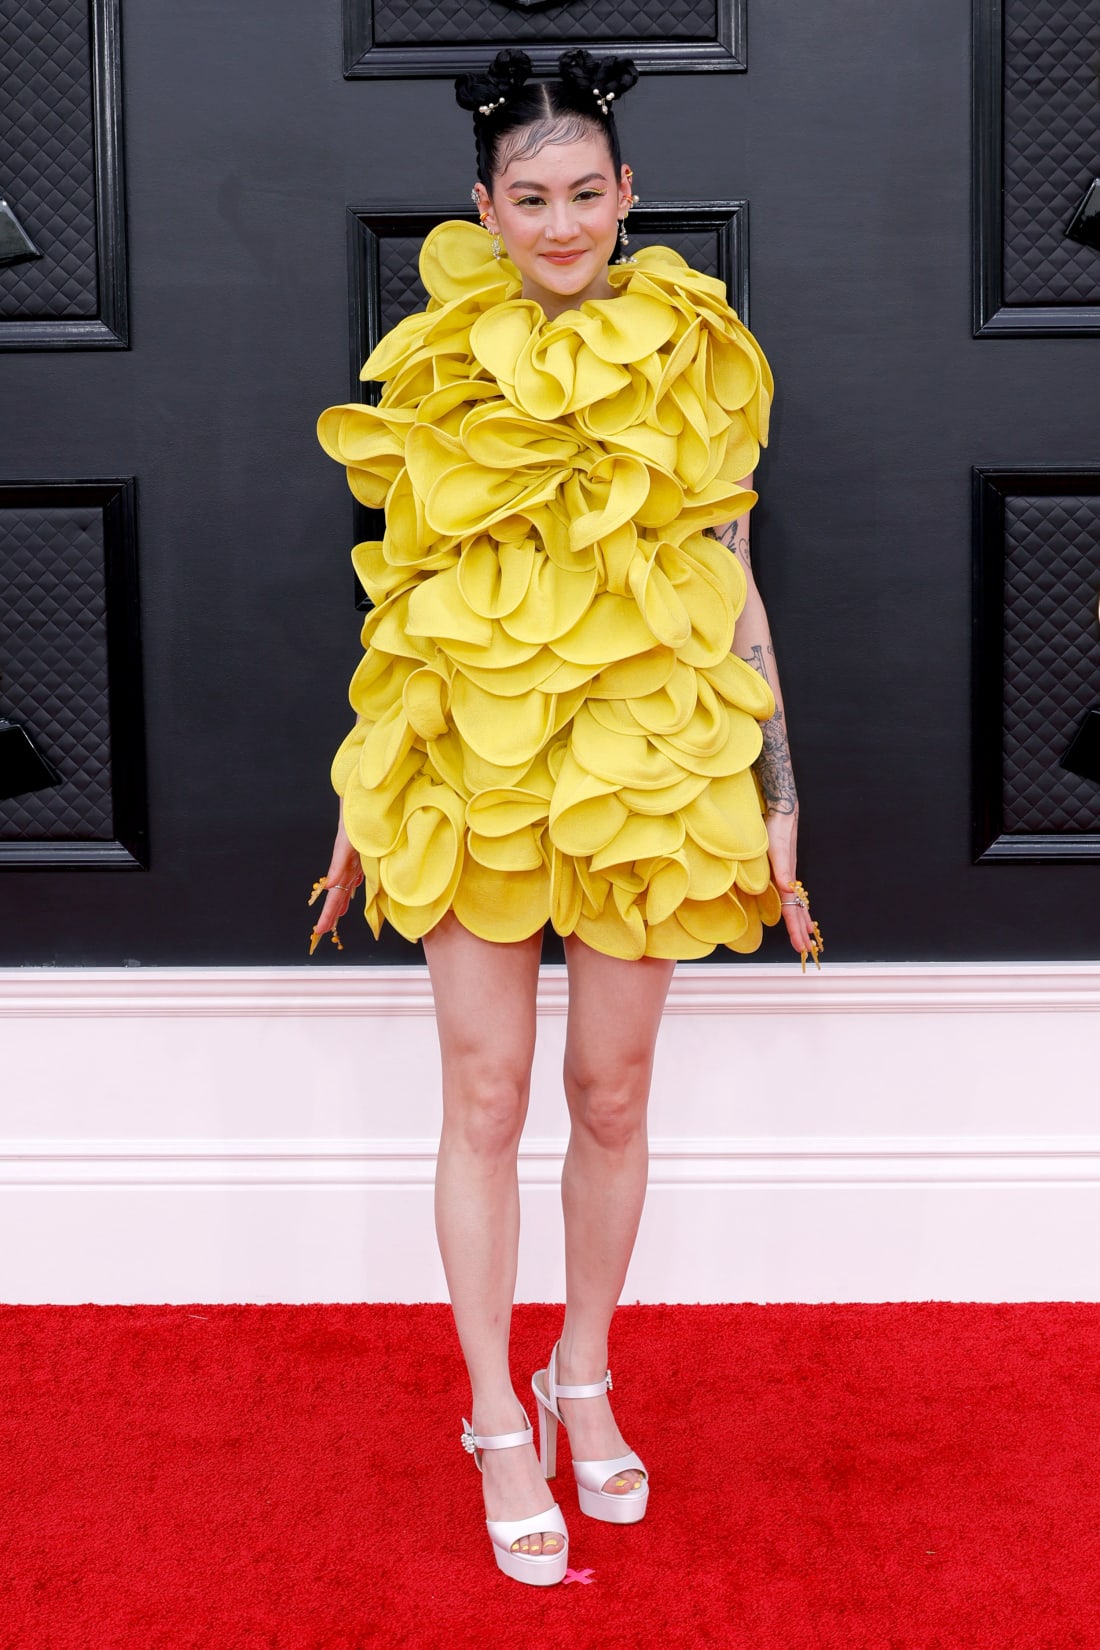 Michelle Zauner, người được đề cử cho giải nghệ sĩ mới xuất sắc nhất, trong bộ váy vàng có kết cấu khá độc đáo. Cô tinh tế sử dụng thêm móng tay giả, khuyên tai và trang điểm tông vàng mang đến sự đồng điệu cho vẻ ngoài.